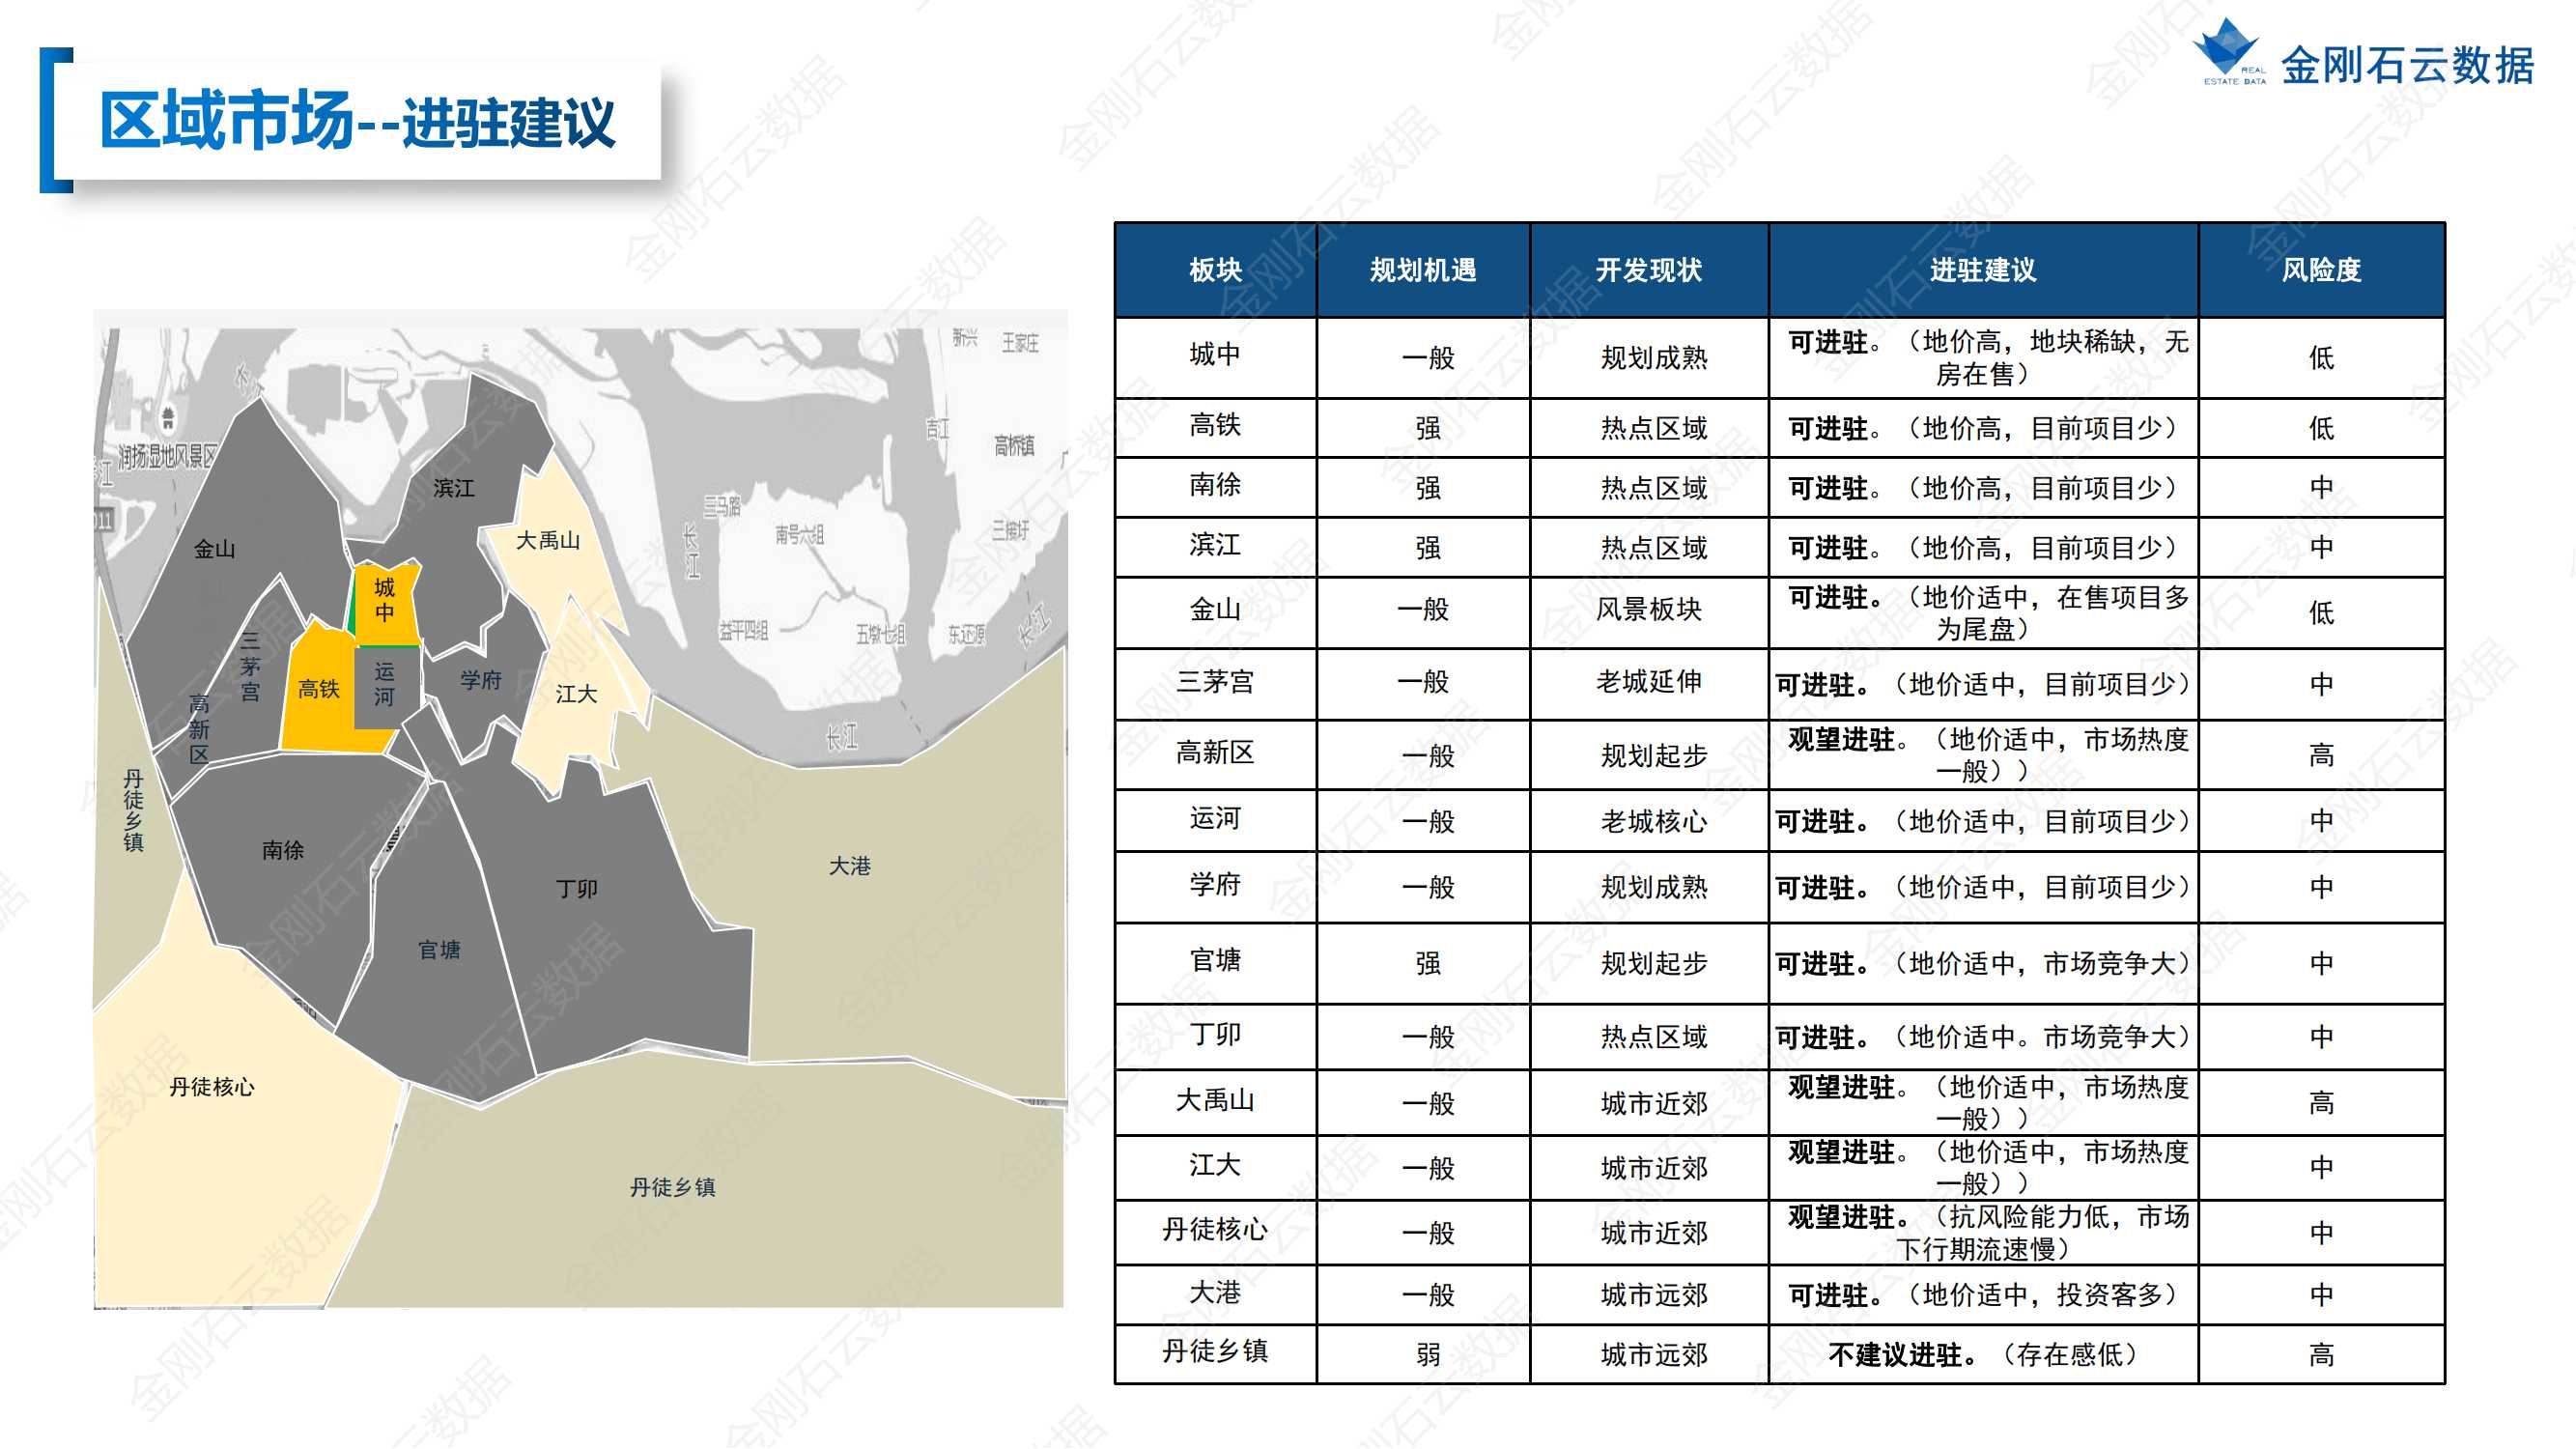 【江苏镇江】2022年上半年度市场报告(图34)